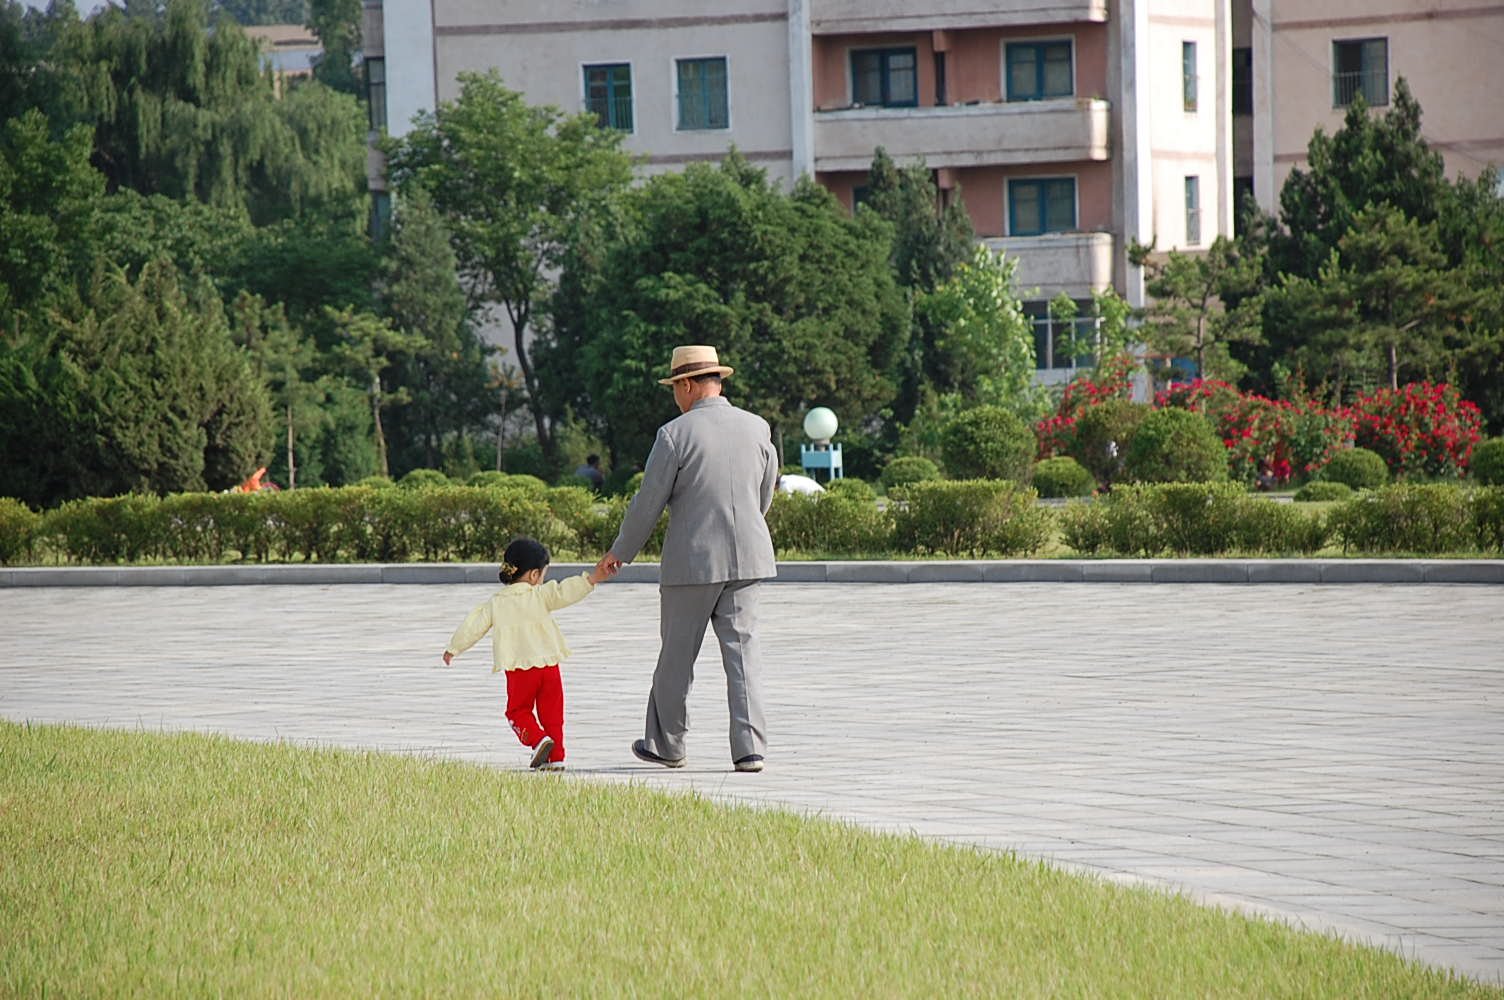 Niña caminando acompañada de hombre mayor.| Imagen: Wikimedia Commons